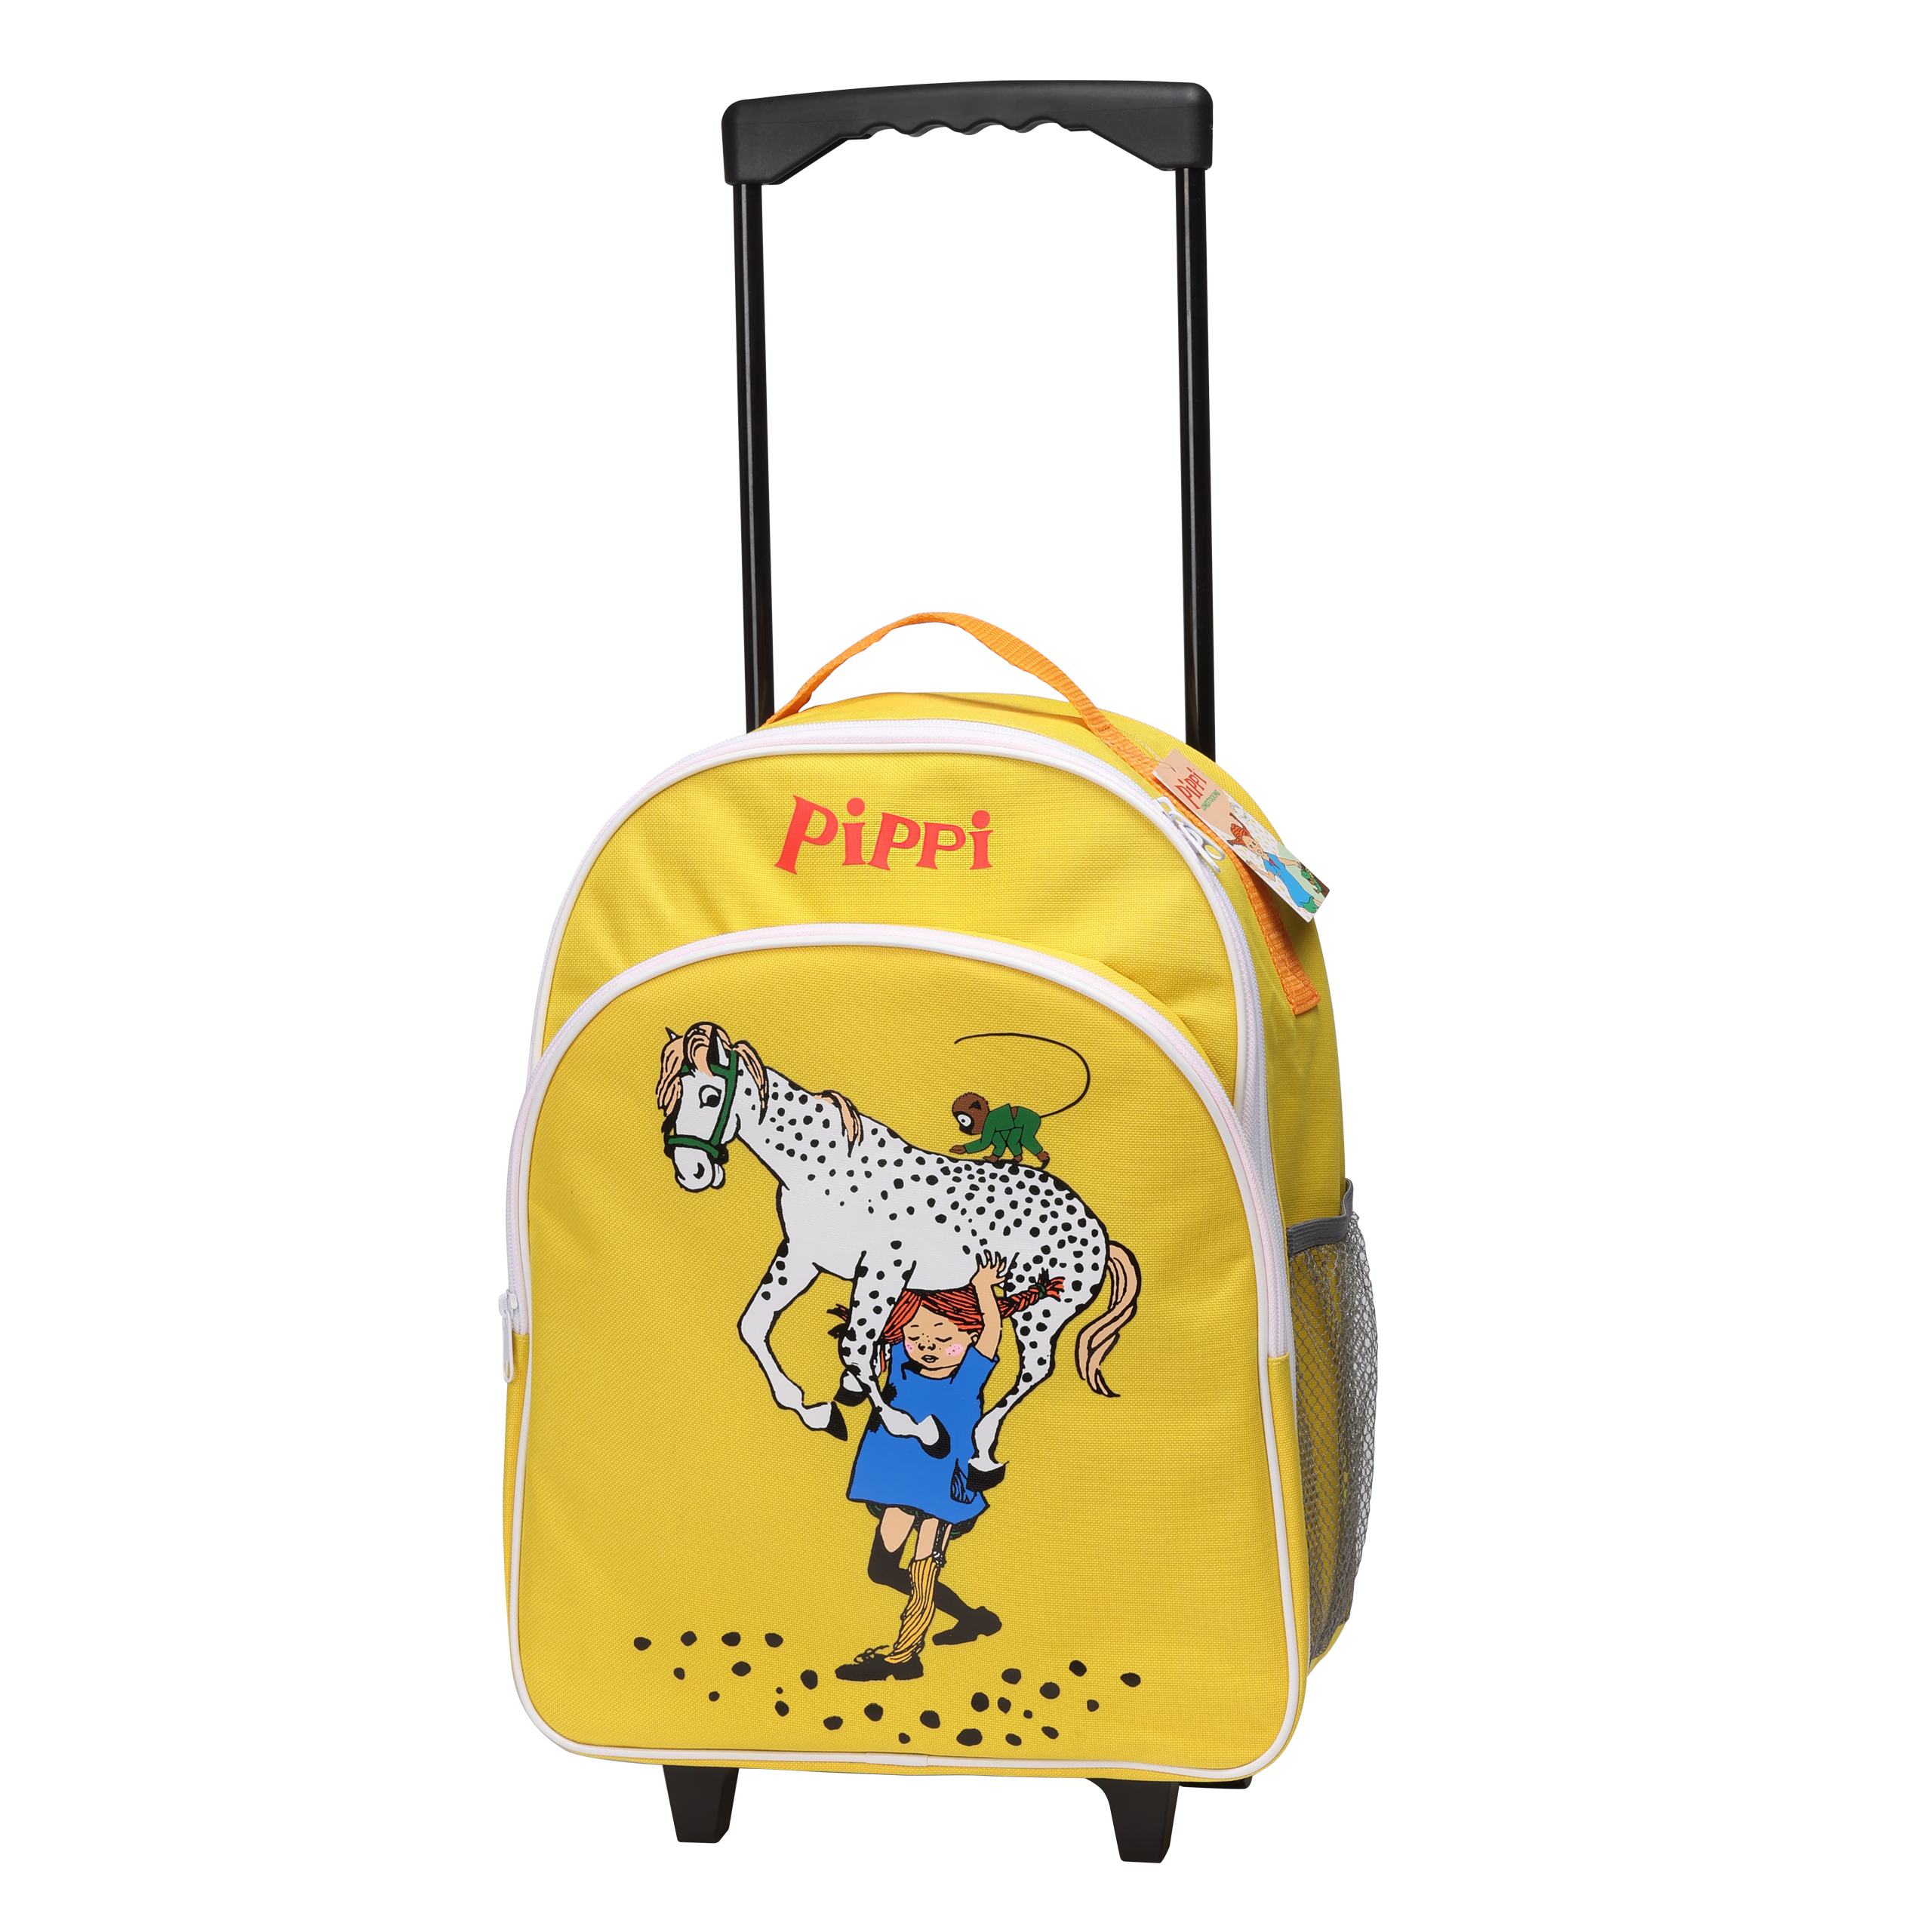 Pippi peppi pitkätossu lasten laukku matkalaukku keltainen